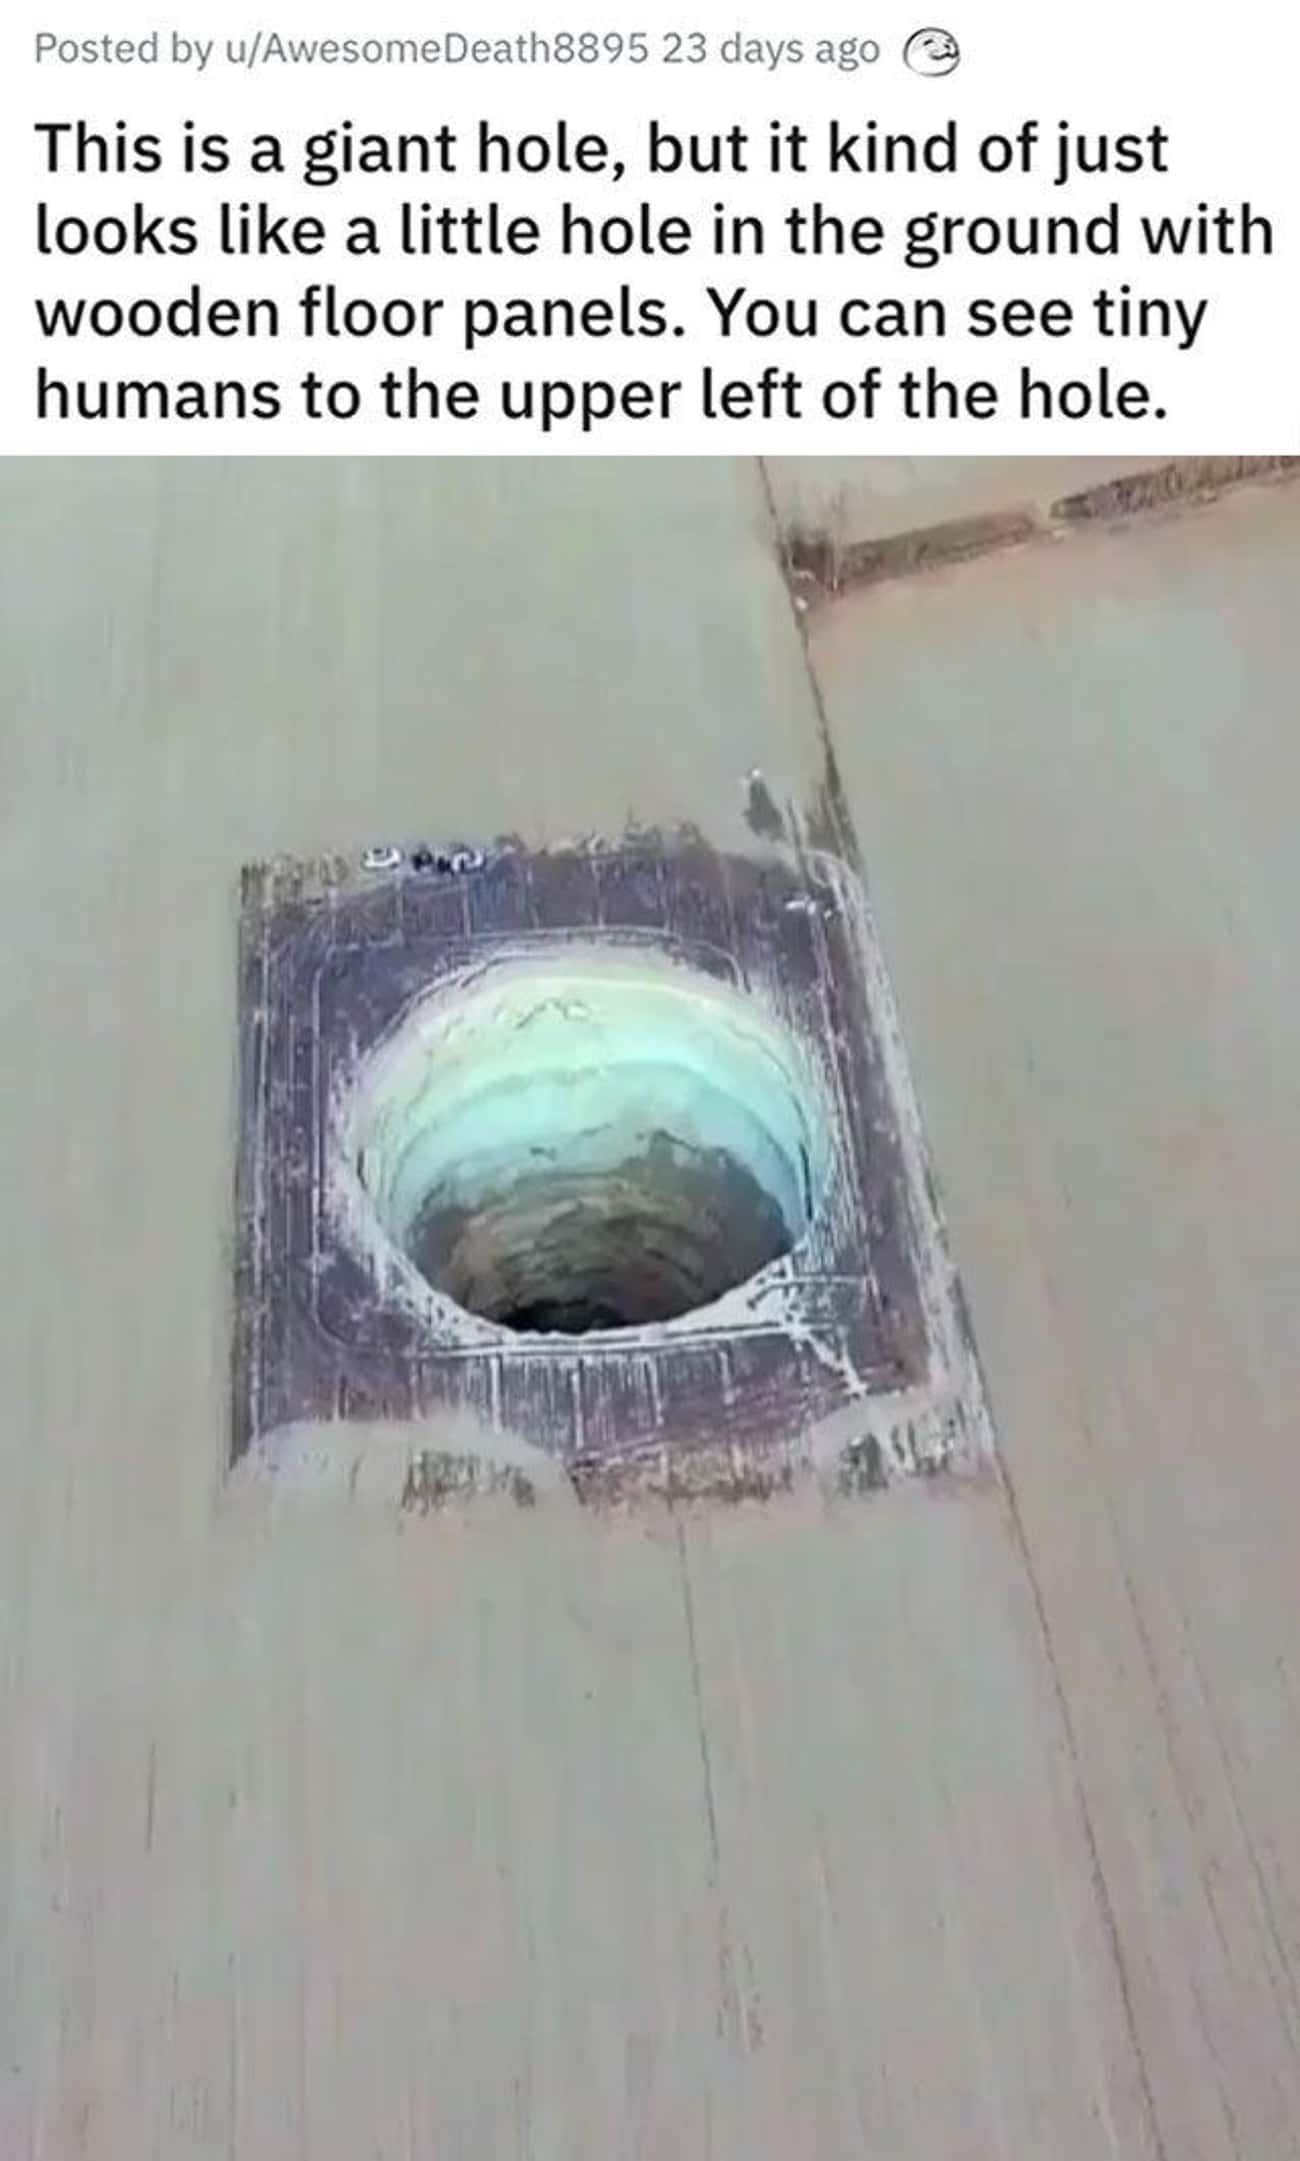 It's a Giant Hole, Not A Tiny Hole